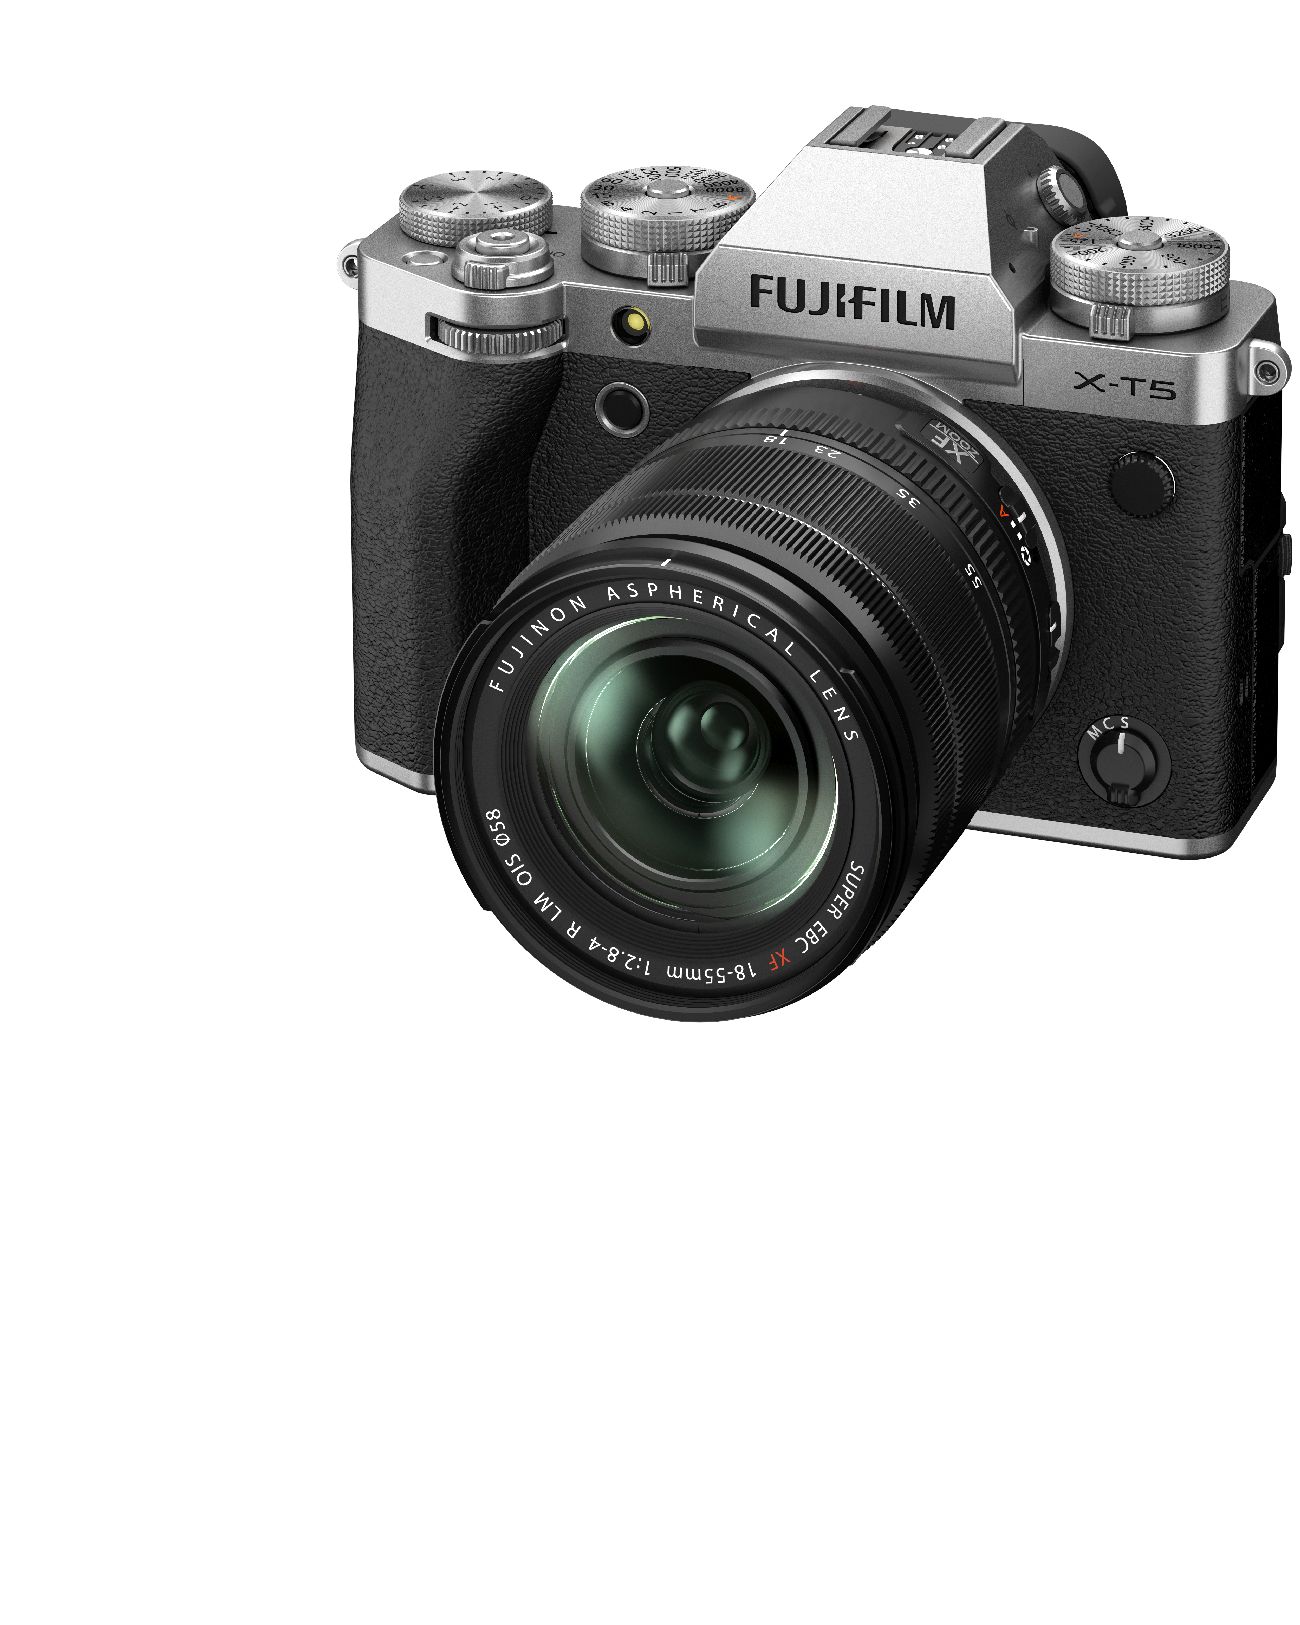 Fujifilm X-T5 silber + XF18-55mm 2.8-4.0 R LM OIS